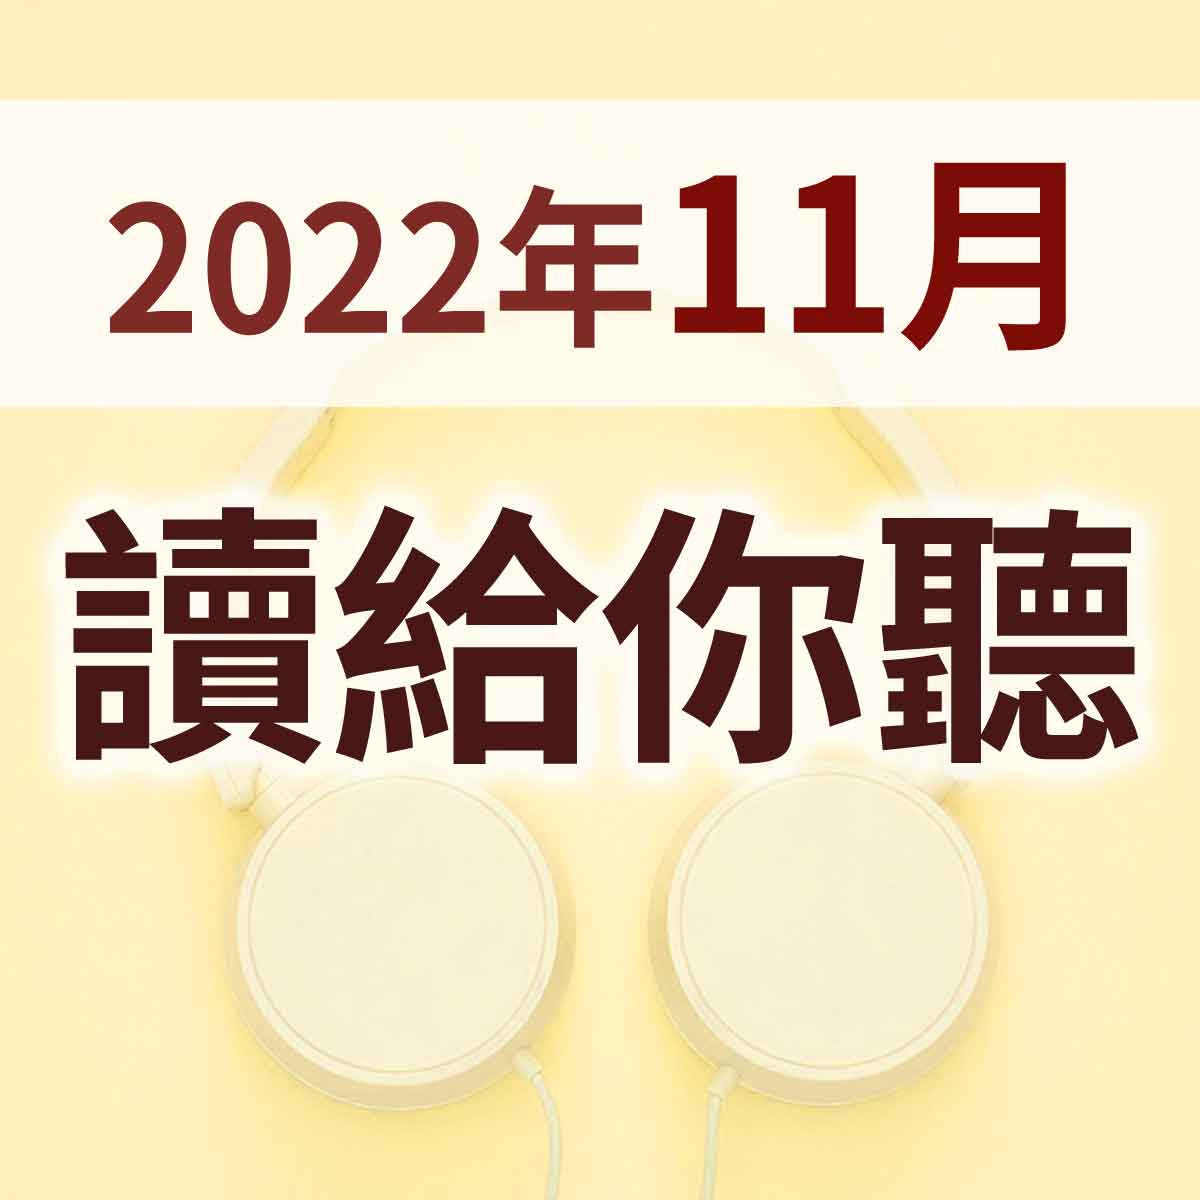 2022年11月 - 讀給你聽 聖靈的果子 01 緒論封面圖